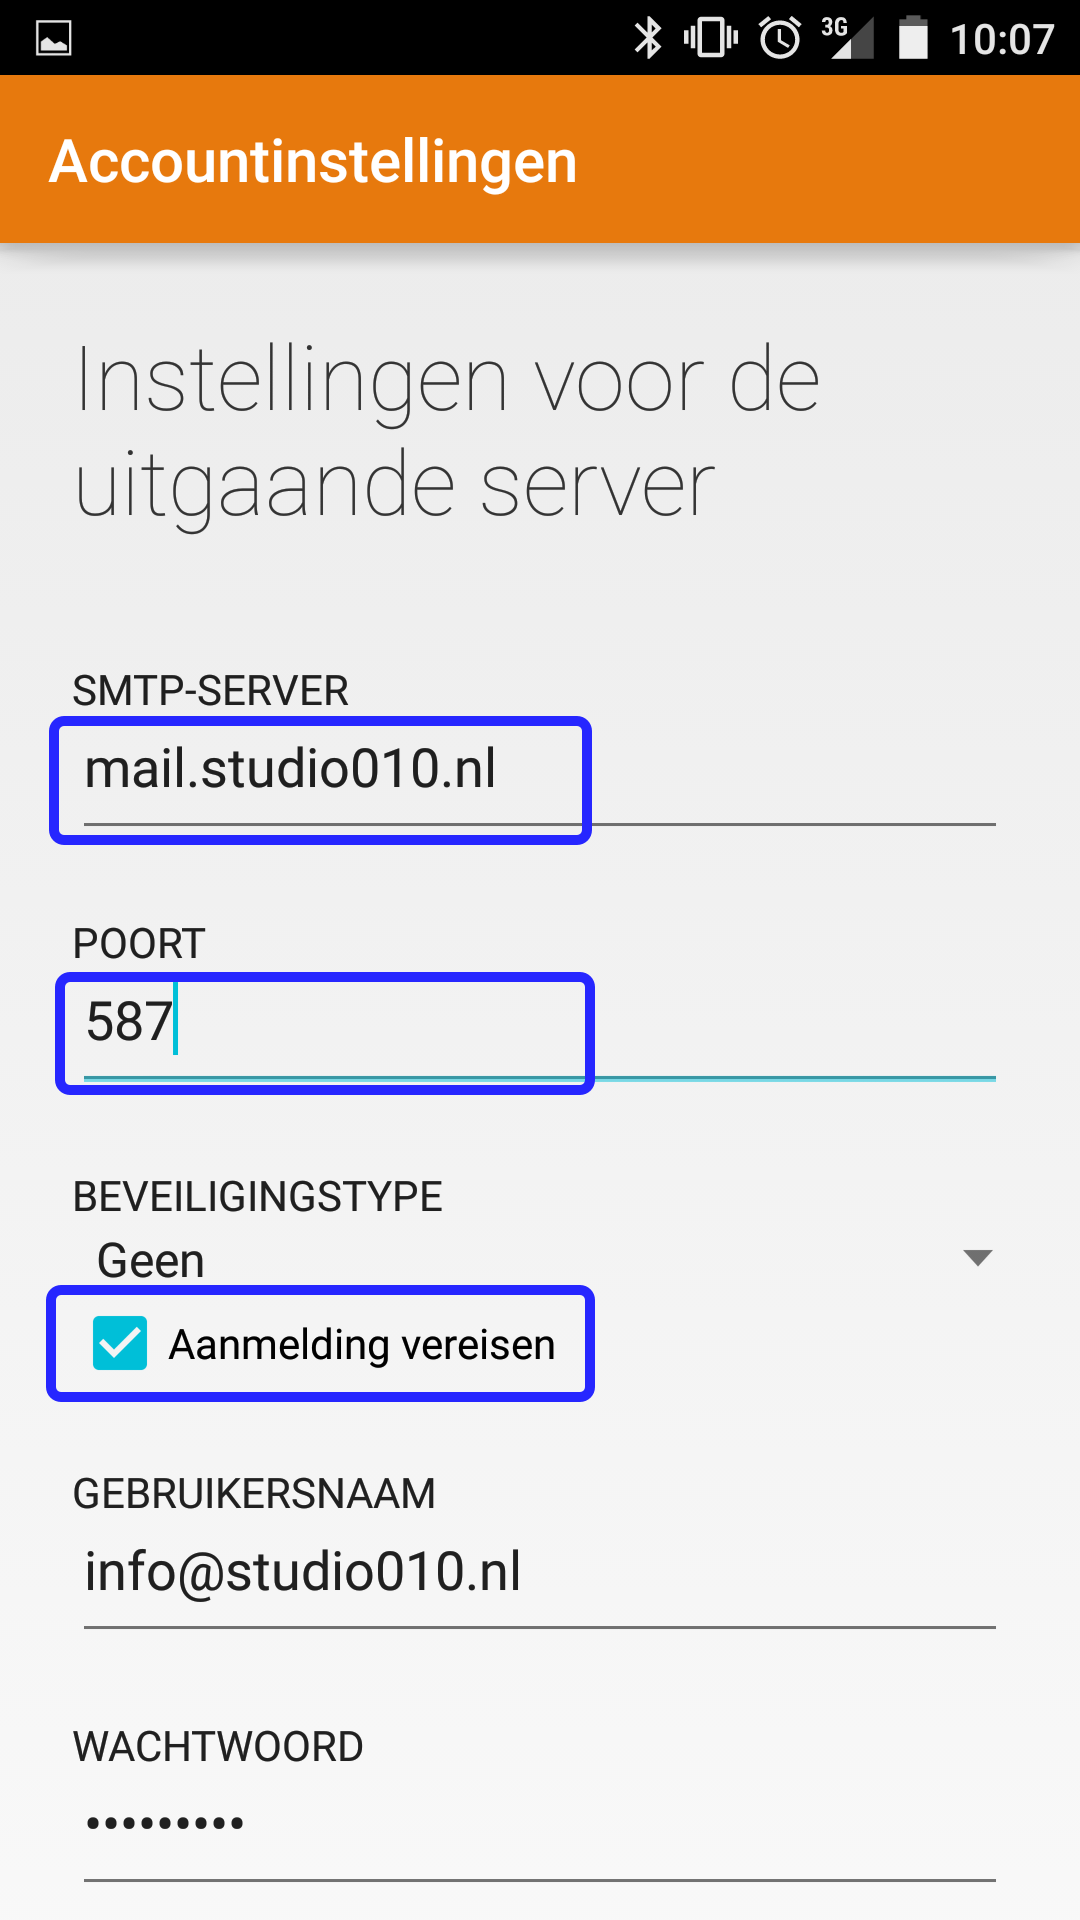 Voor uitgaande email geeft u dezelfde mailserver op, dus email.studio010.nl en gebruik poort 587. Aanmelding is vereist